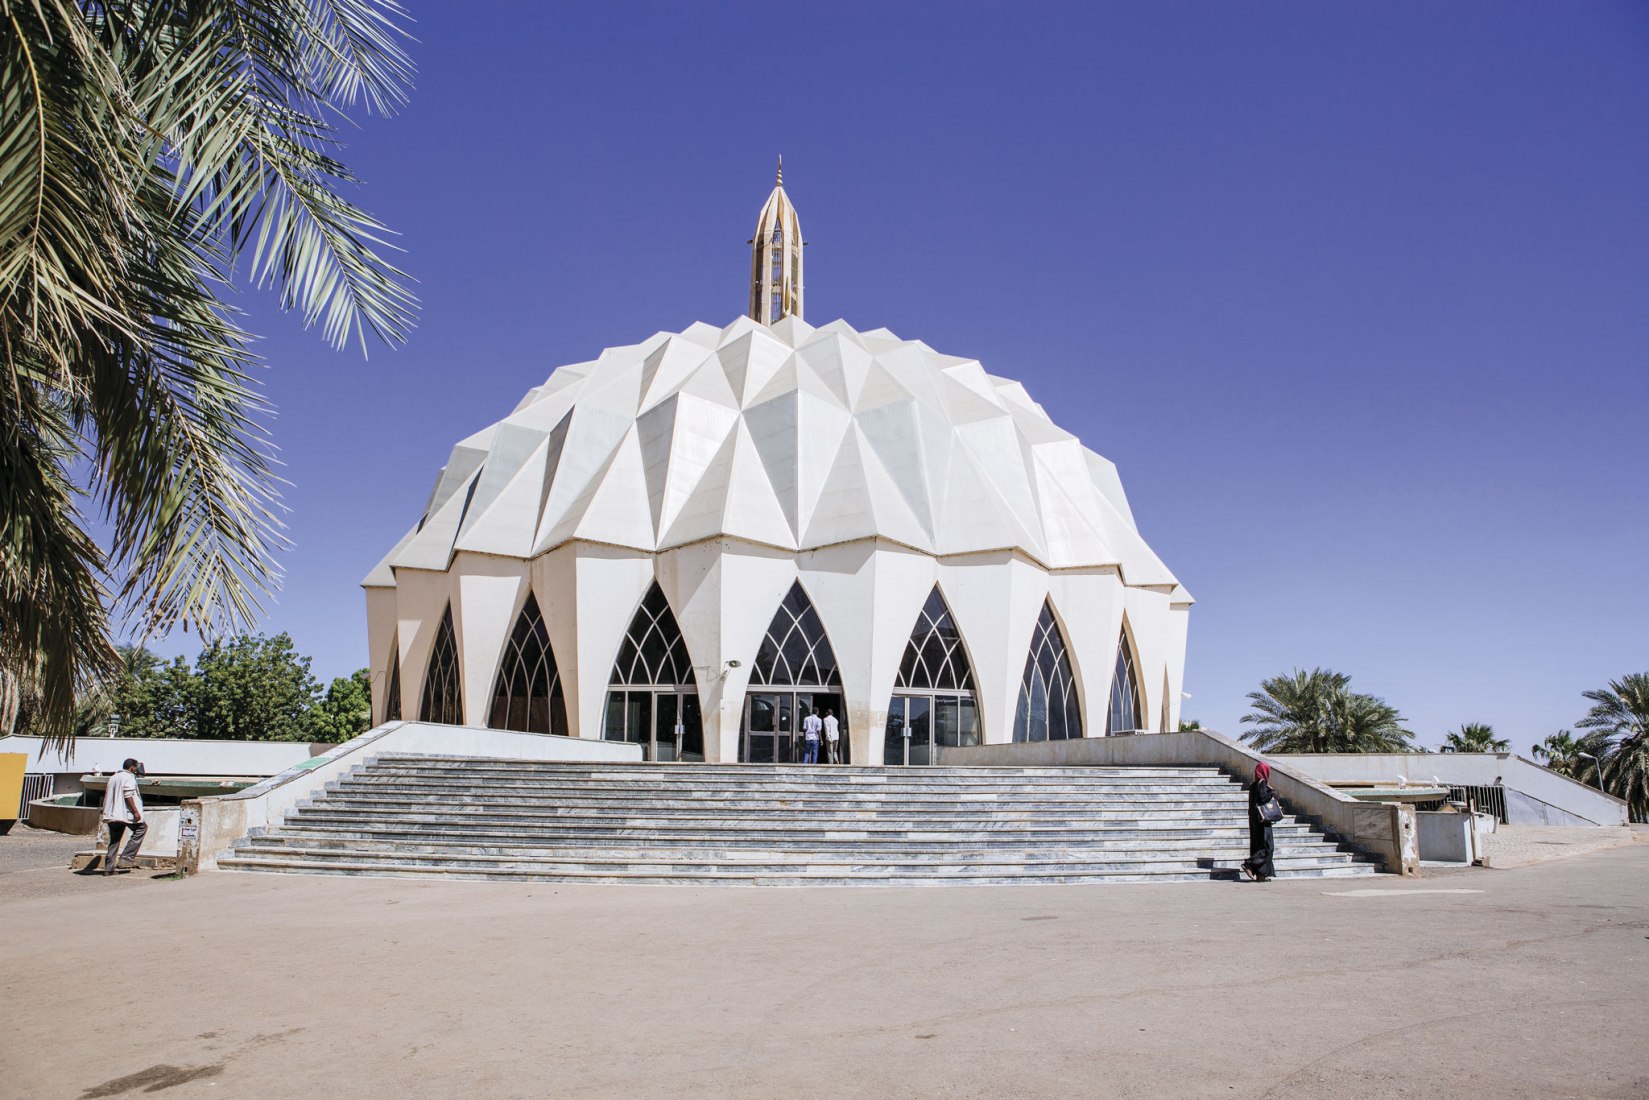 Sudan's Architectural